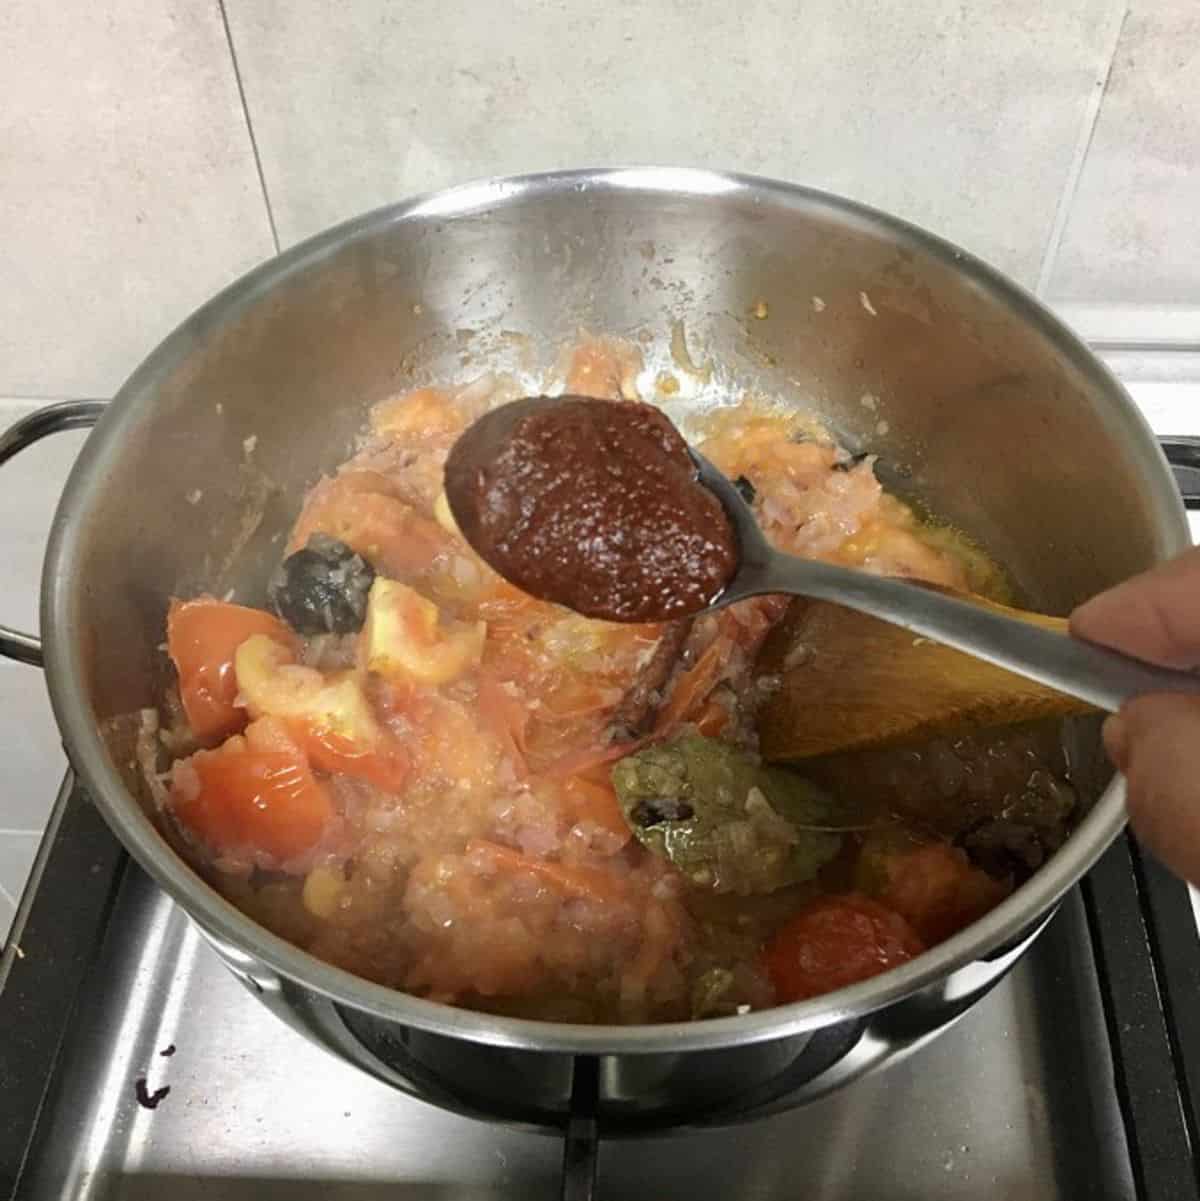 Adding a spoon of tomato paste.